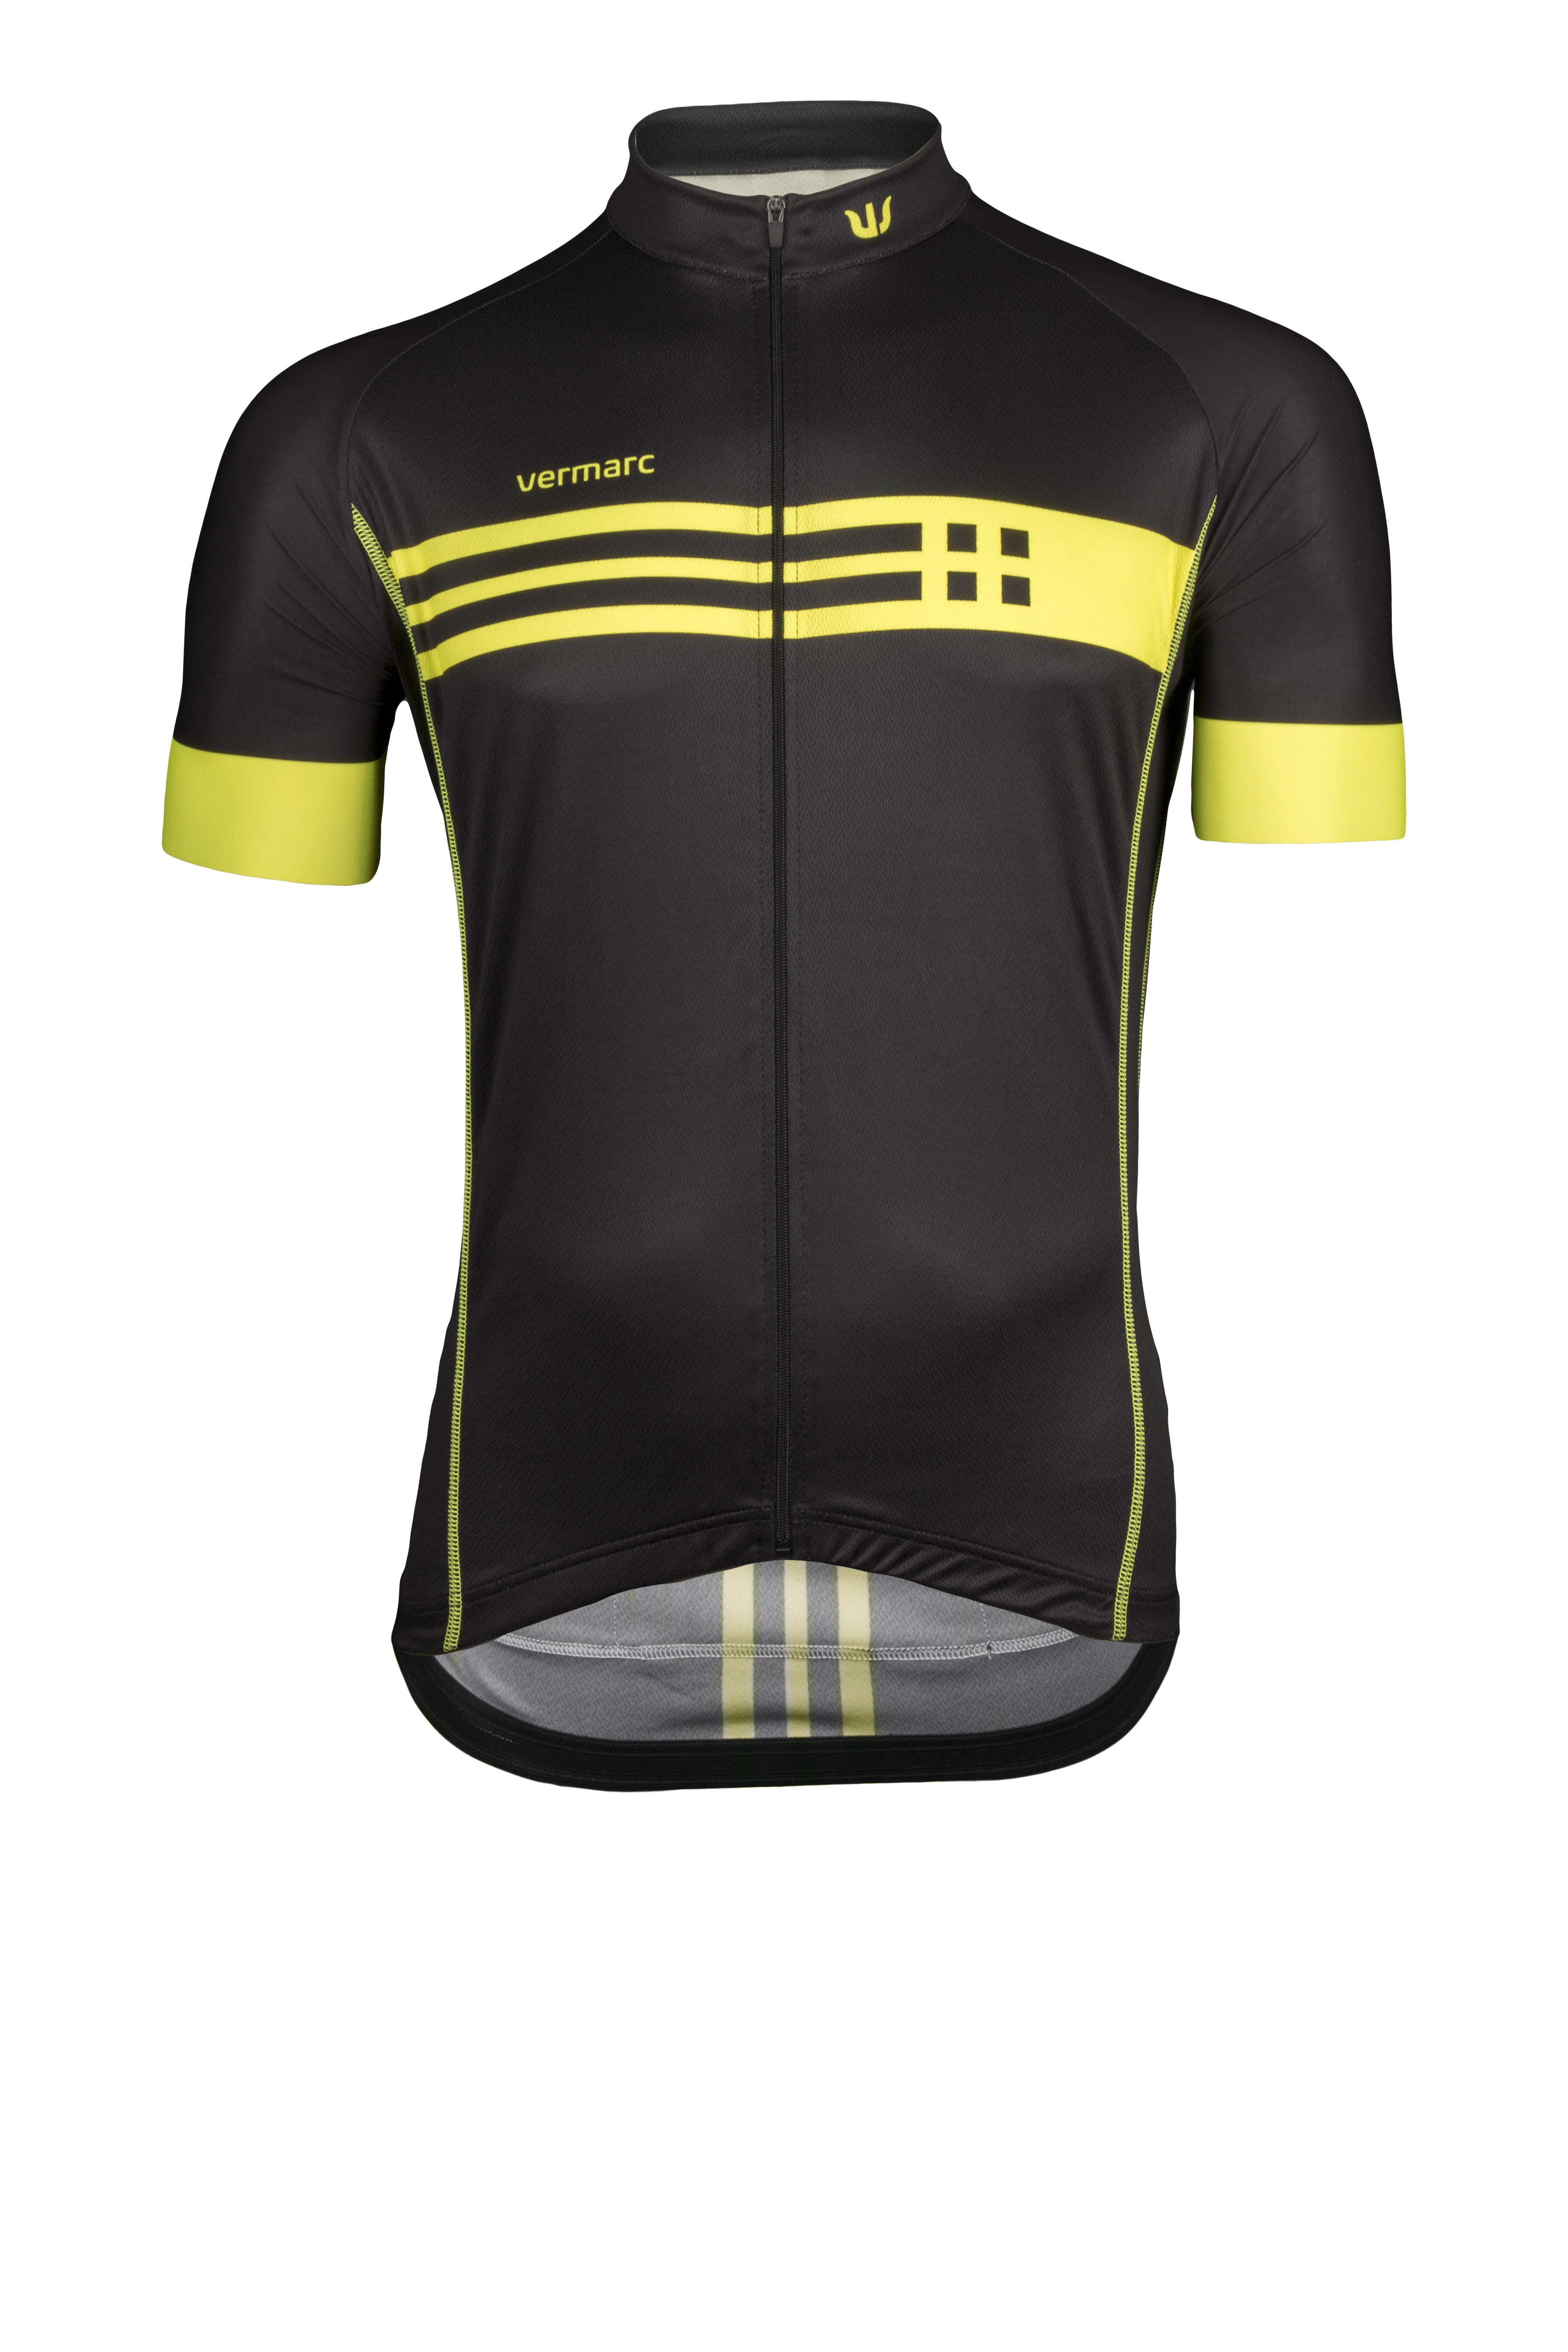 Vermarc squadra fietsshirt korte mouwen zwart fluo geel